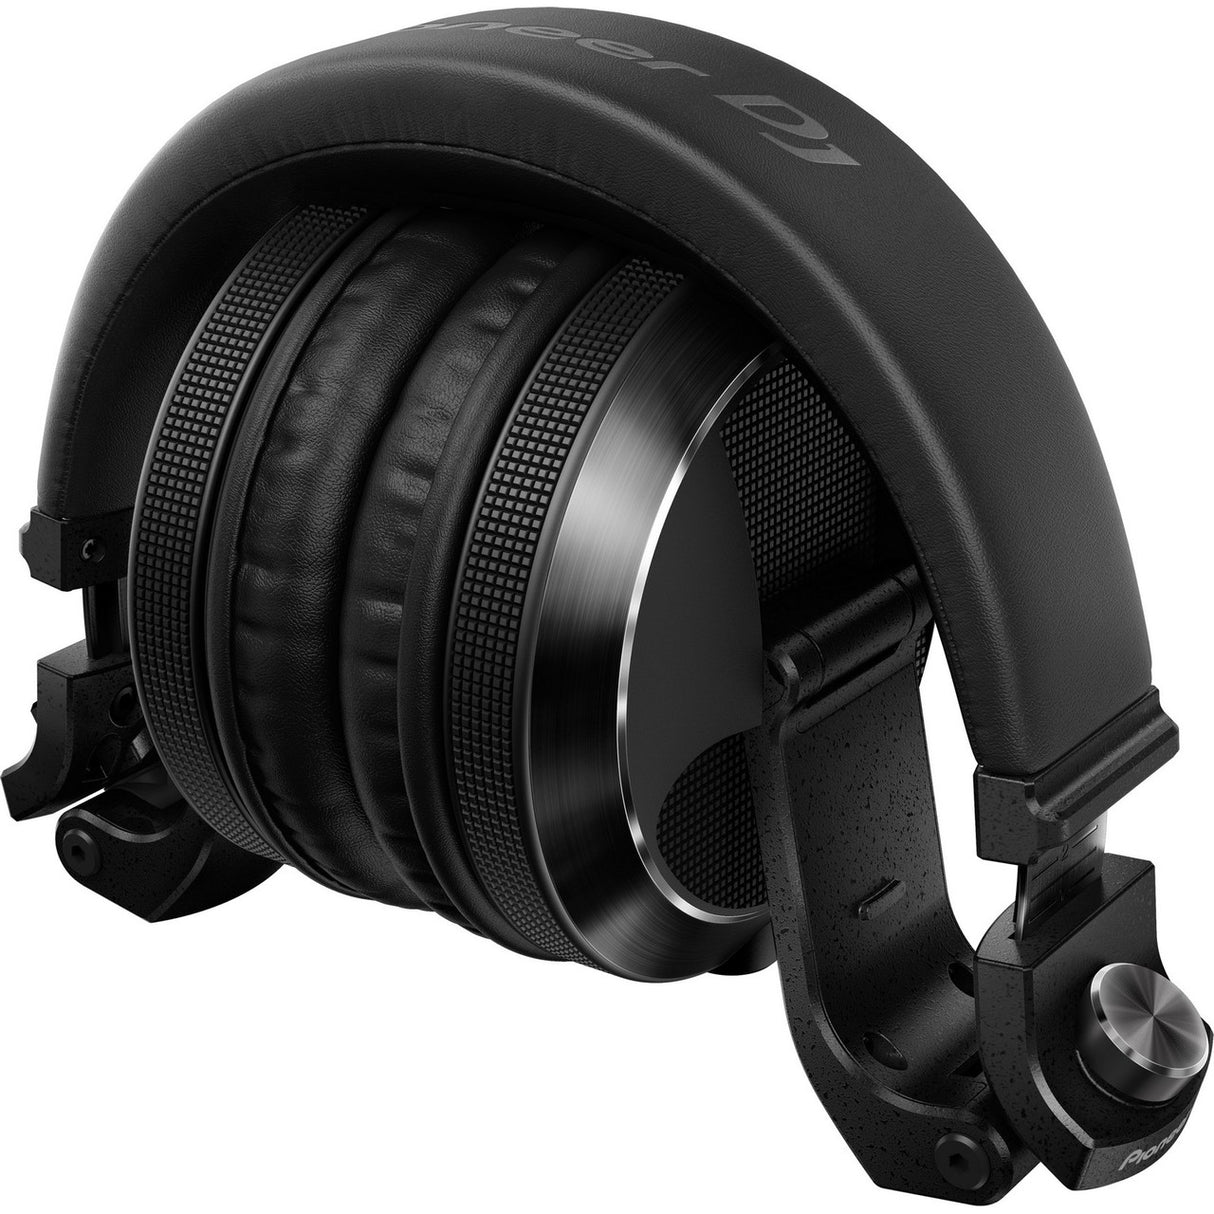 Pioneer HDJ-X7-K | Over Ear DJ Headphones Black